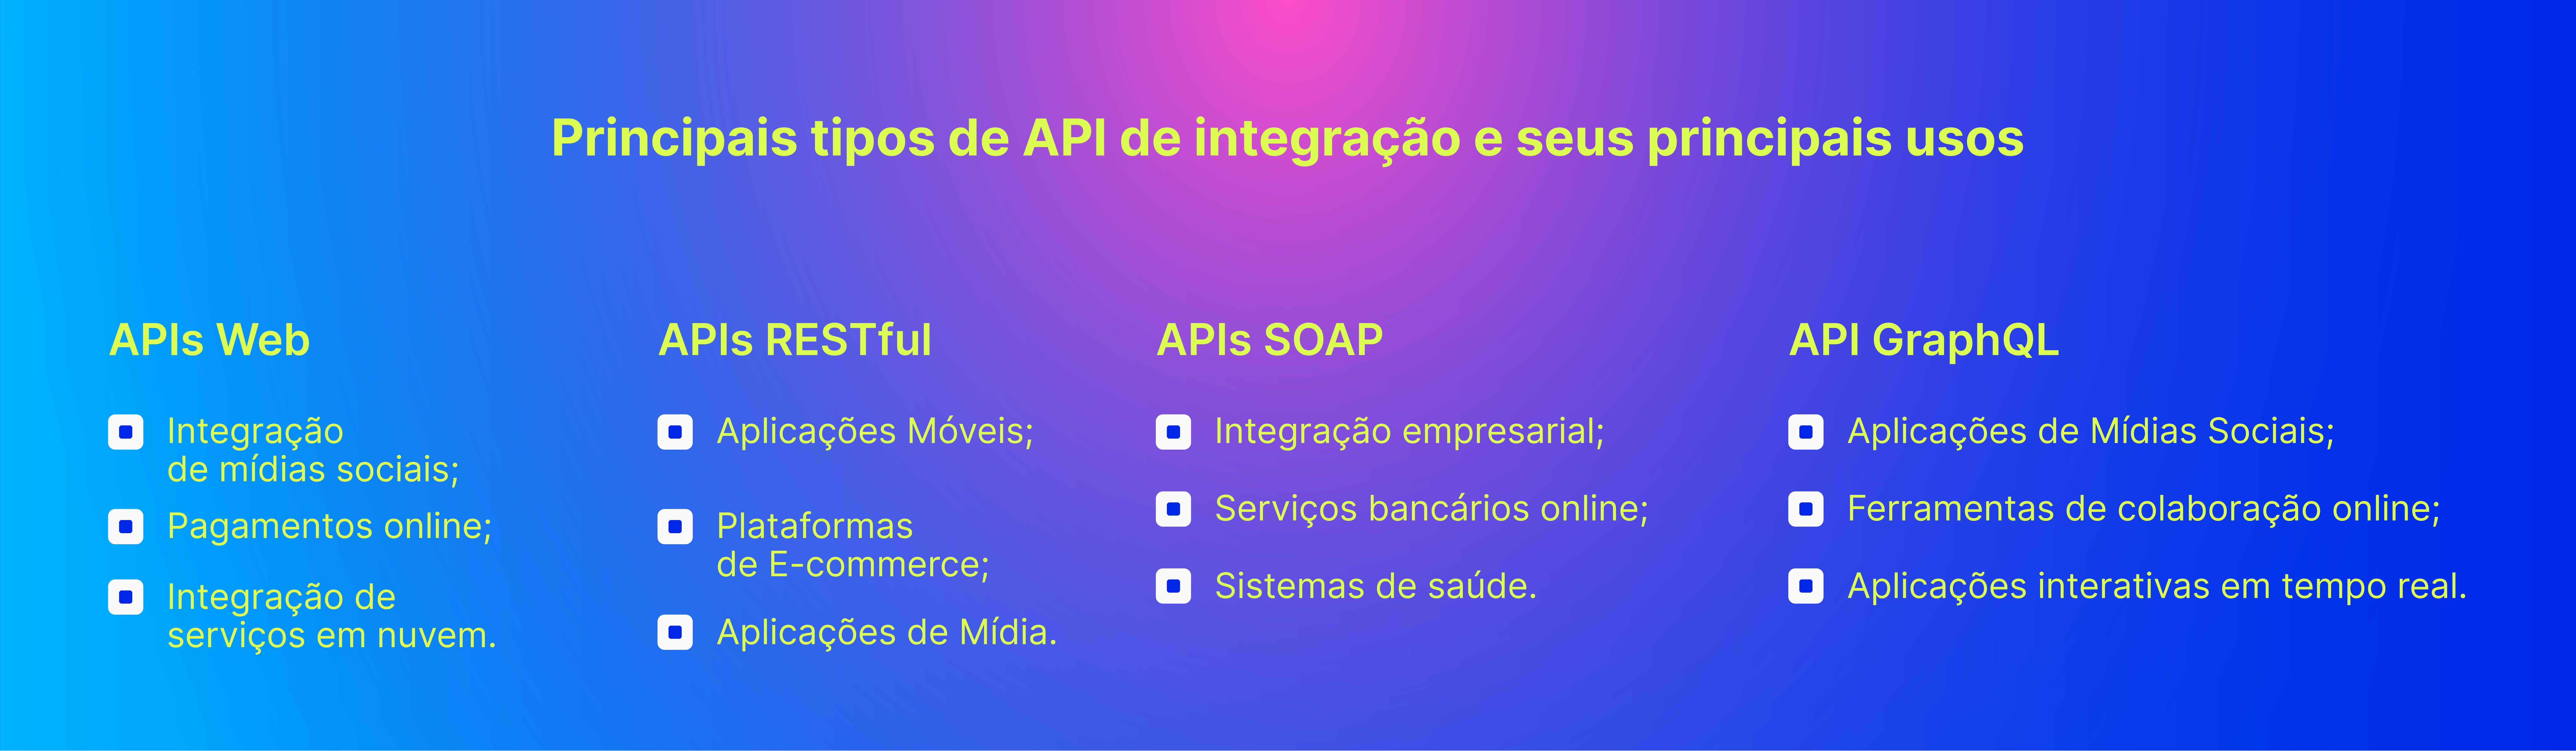 Principais tipos de API de integração e seus principais usos